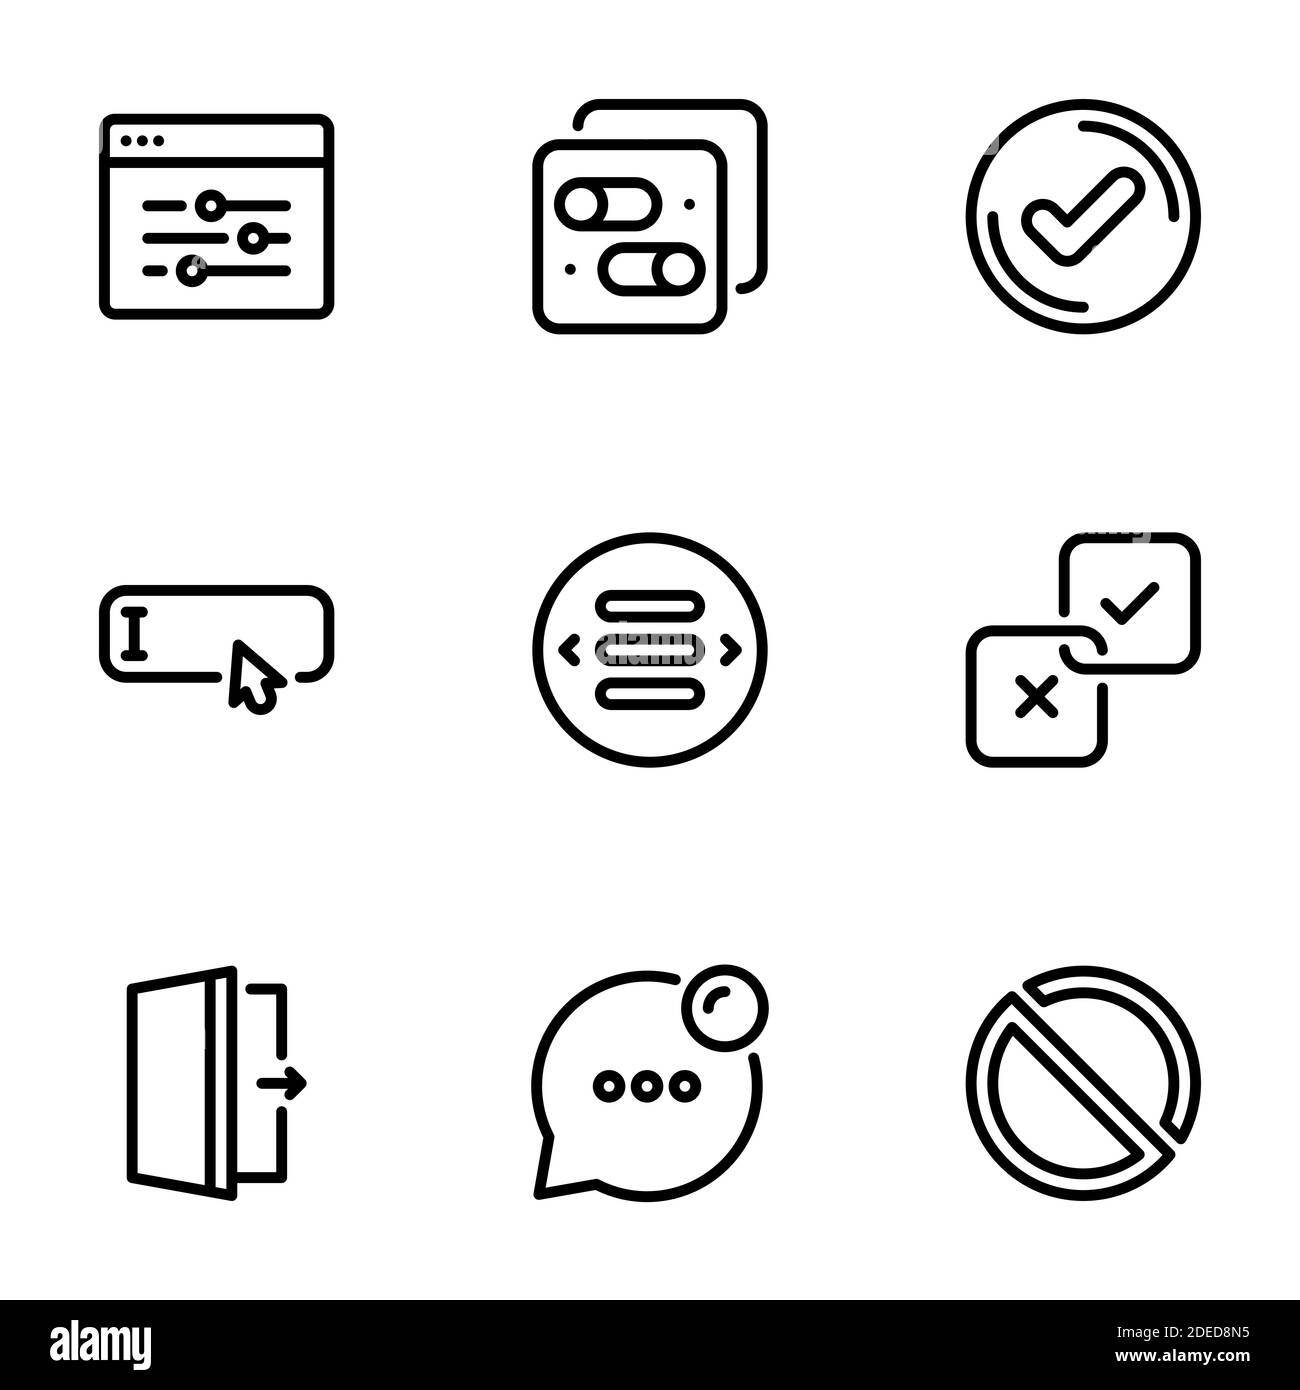 Insieme di icone vettoriali nere, isolate su sfondo bianco, su elementi tematici dell'interfaccia, pulsanti e puntatori Illustrazione Vettoriale